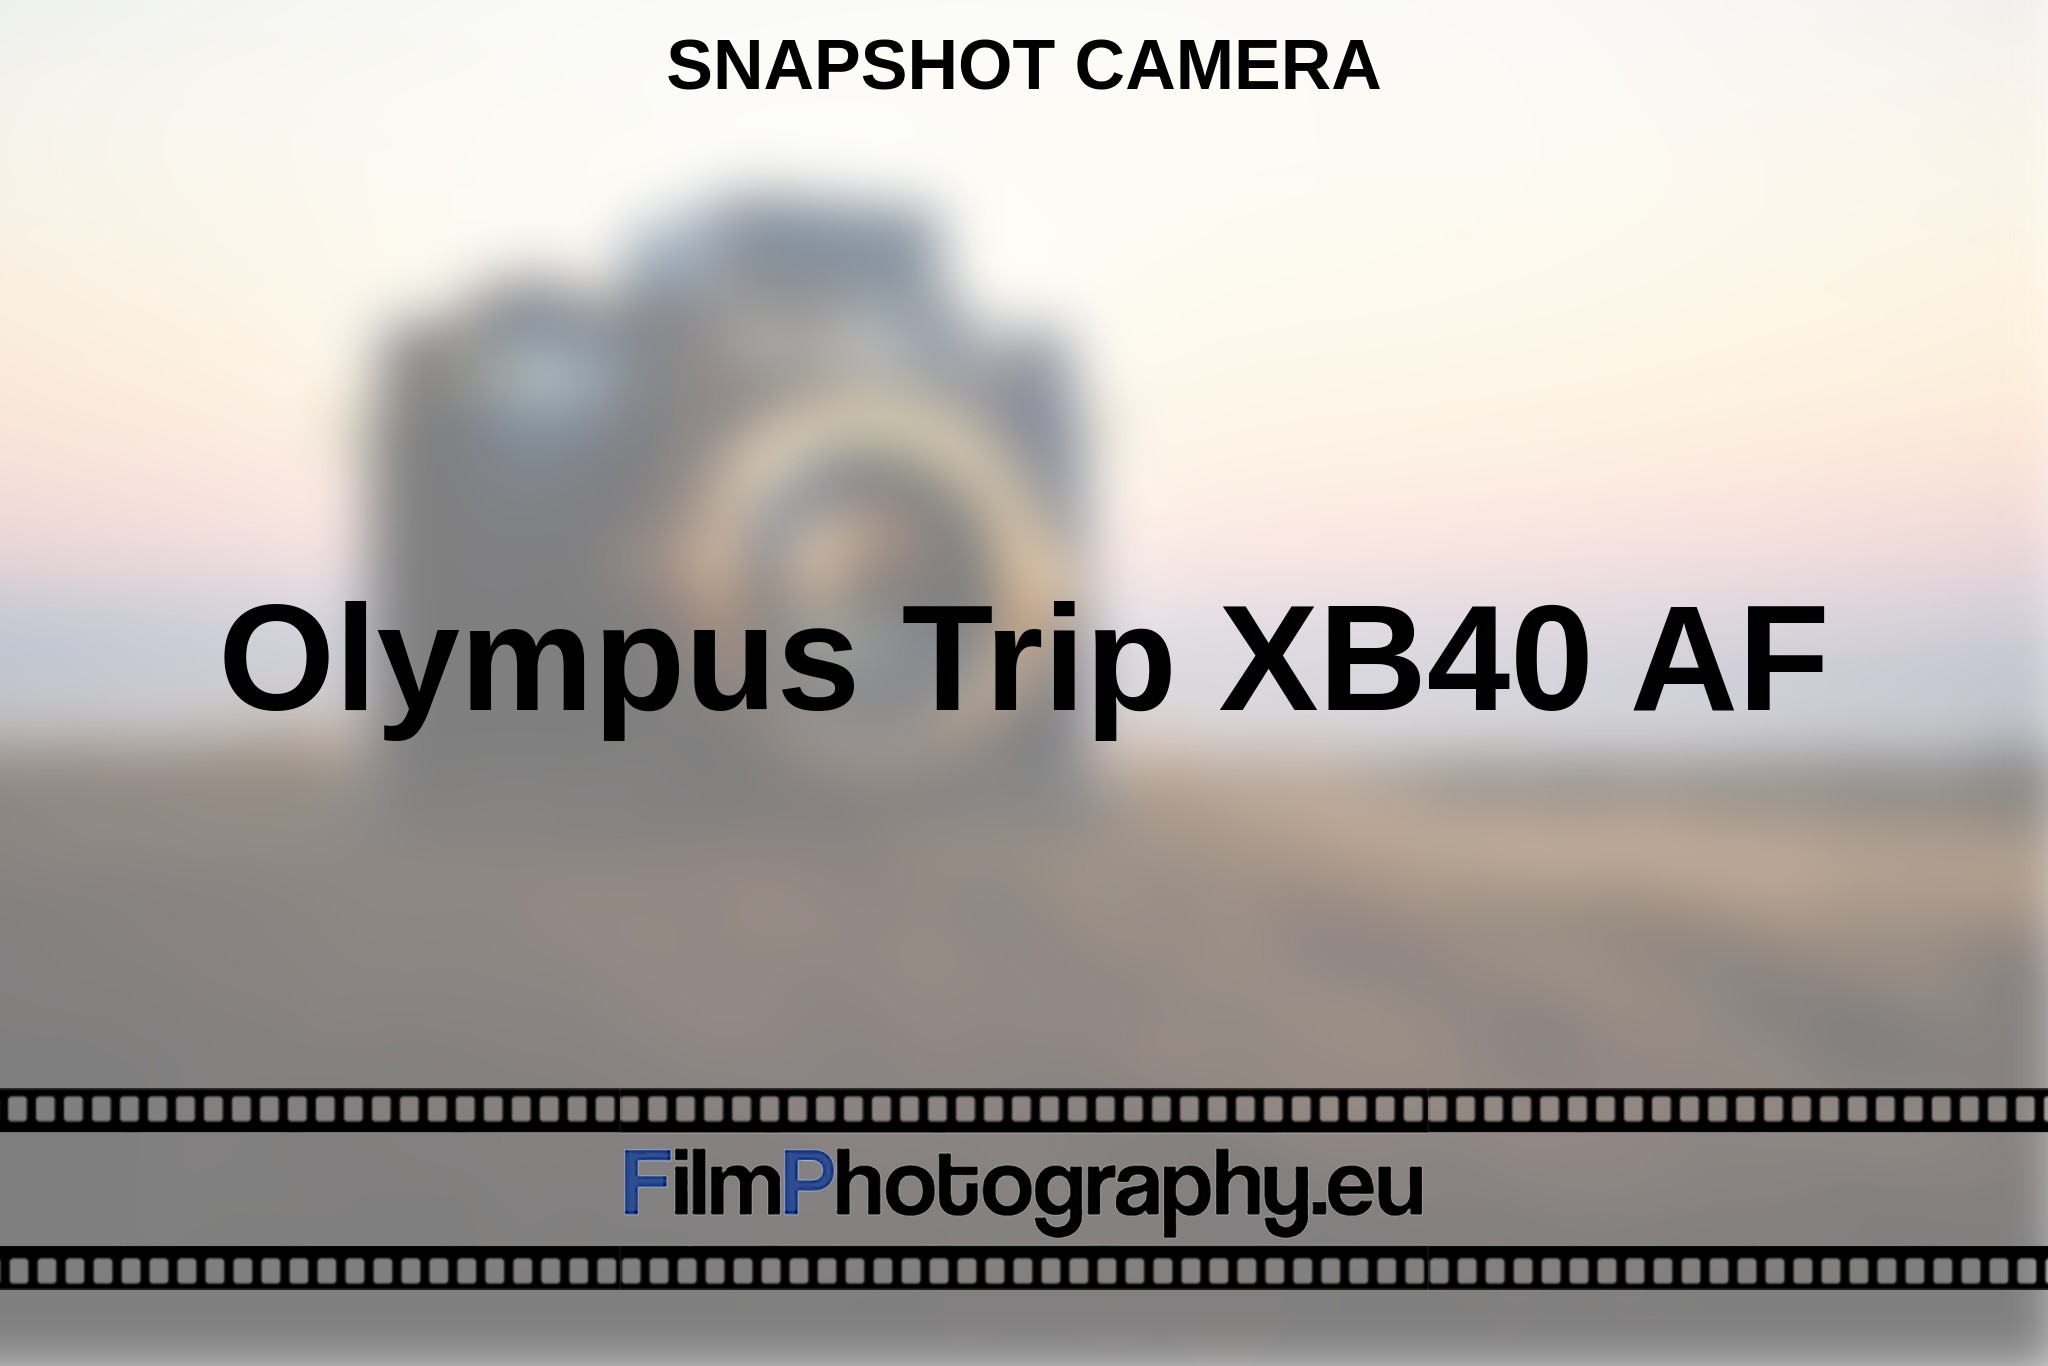 olympus-trip-xb40-af-snapshot-camera-en-bnv.jpg